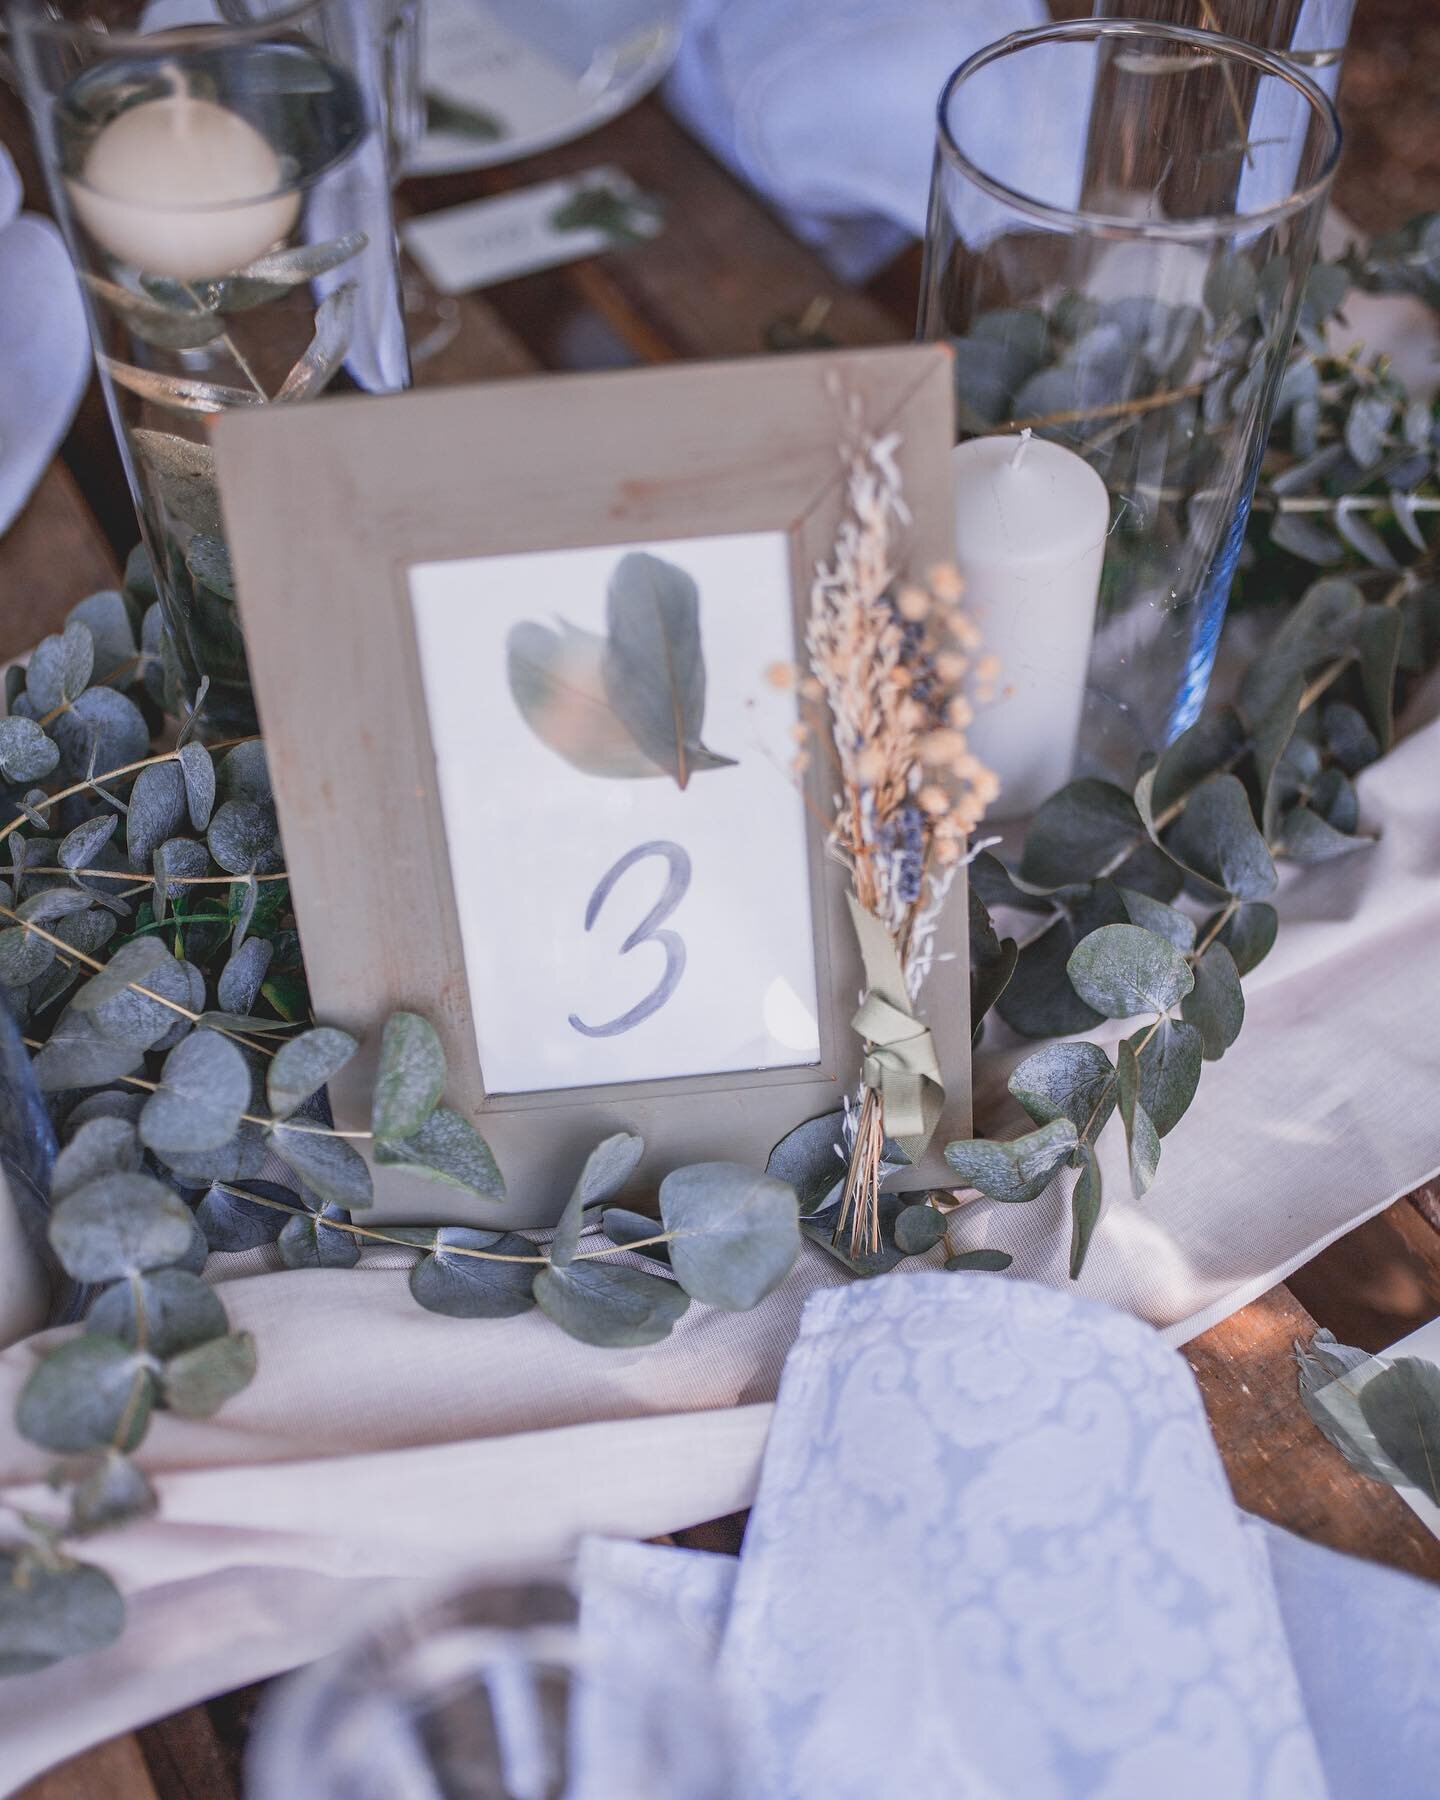 Eukalyptus und die Liebe zum Detail 💚
-&mdash;&mdash;&mdash;&mdash;&mdash;&mdash;&mdash;&mdash;&mdash;-

Dekoration &amp; Floristik @flowersoflove_ 
Papeterie &amp; Acryldesign @_letteratelier 
Foto @ginamariaphotographie 
Video @danielahoffnerfotog